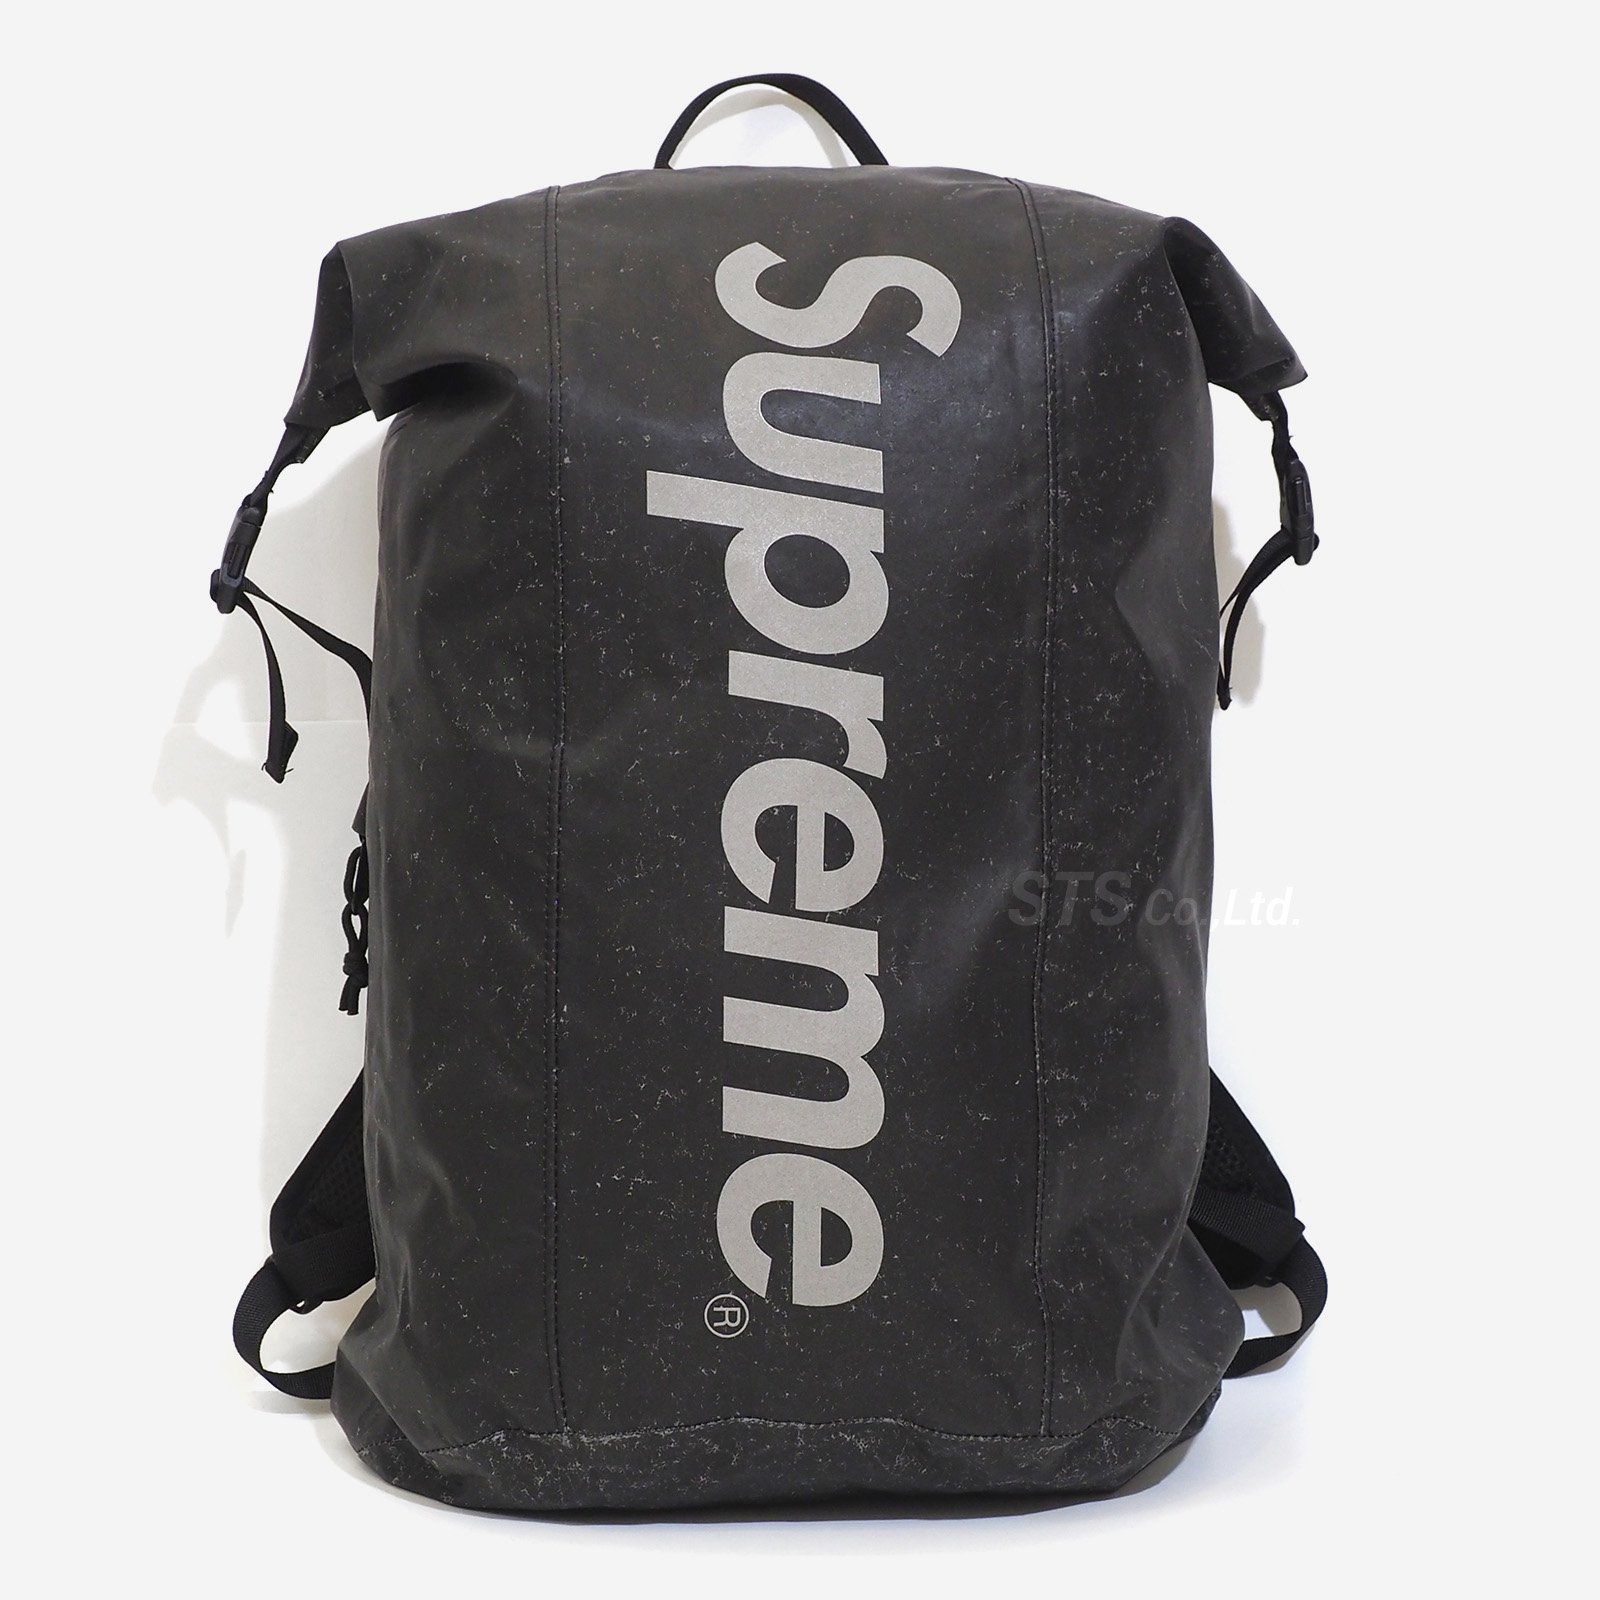 Supreme - Waterproof Reflective Speckled Backpack - ParkSIDER